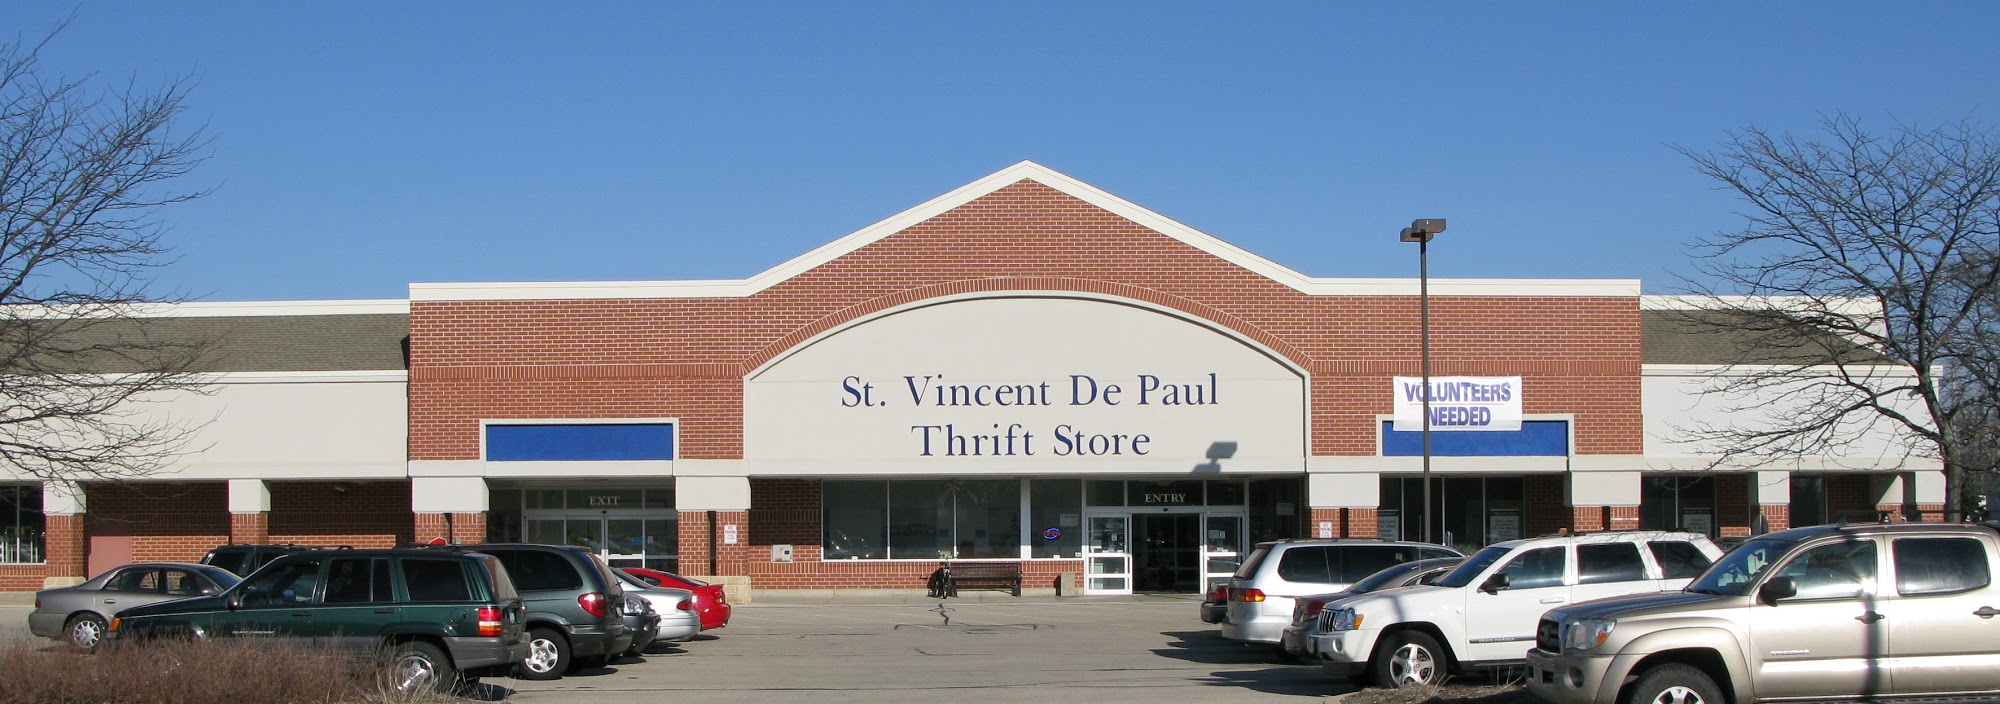 St Vincent De Paul Thrift Store Waukesha